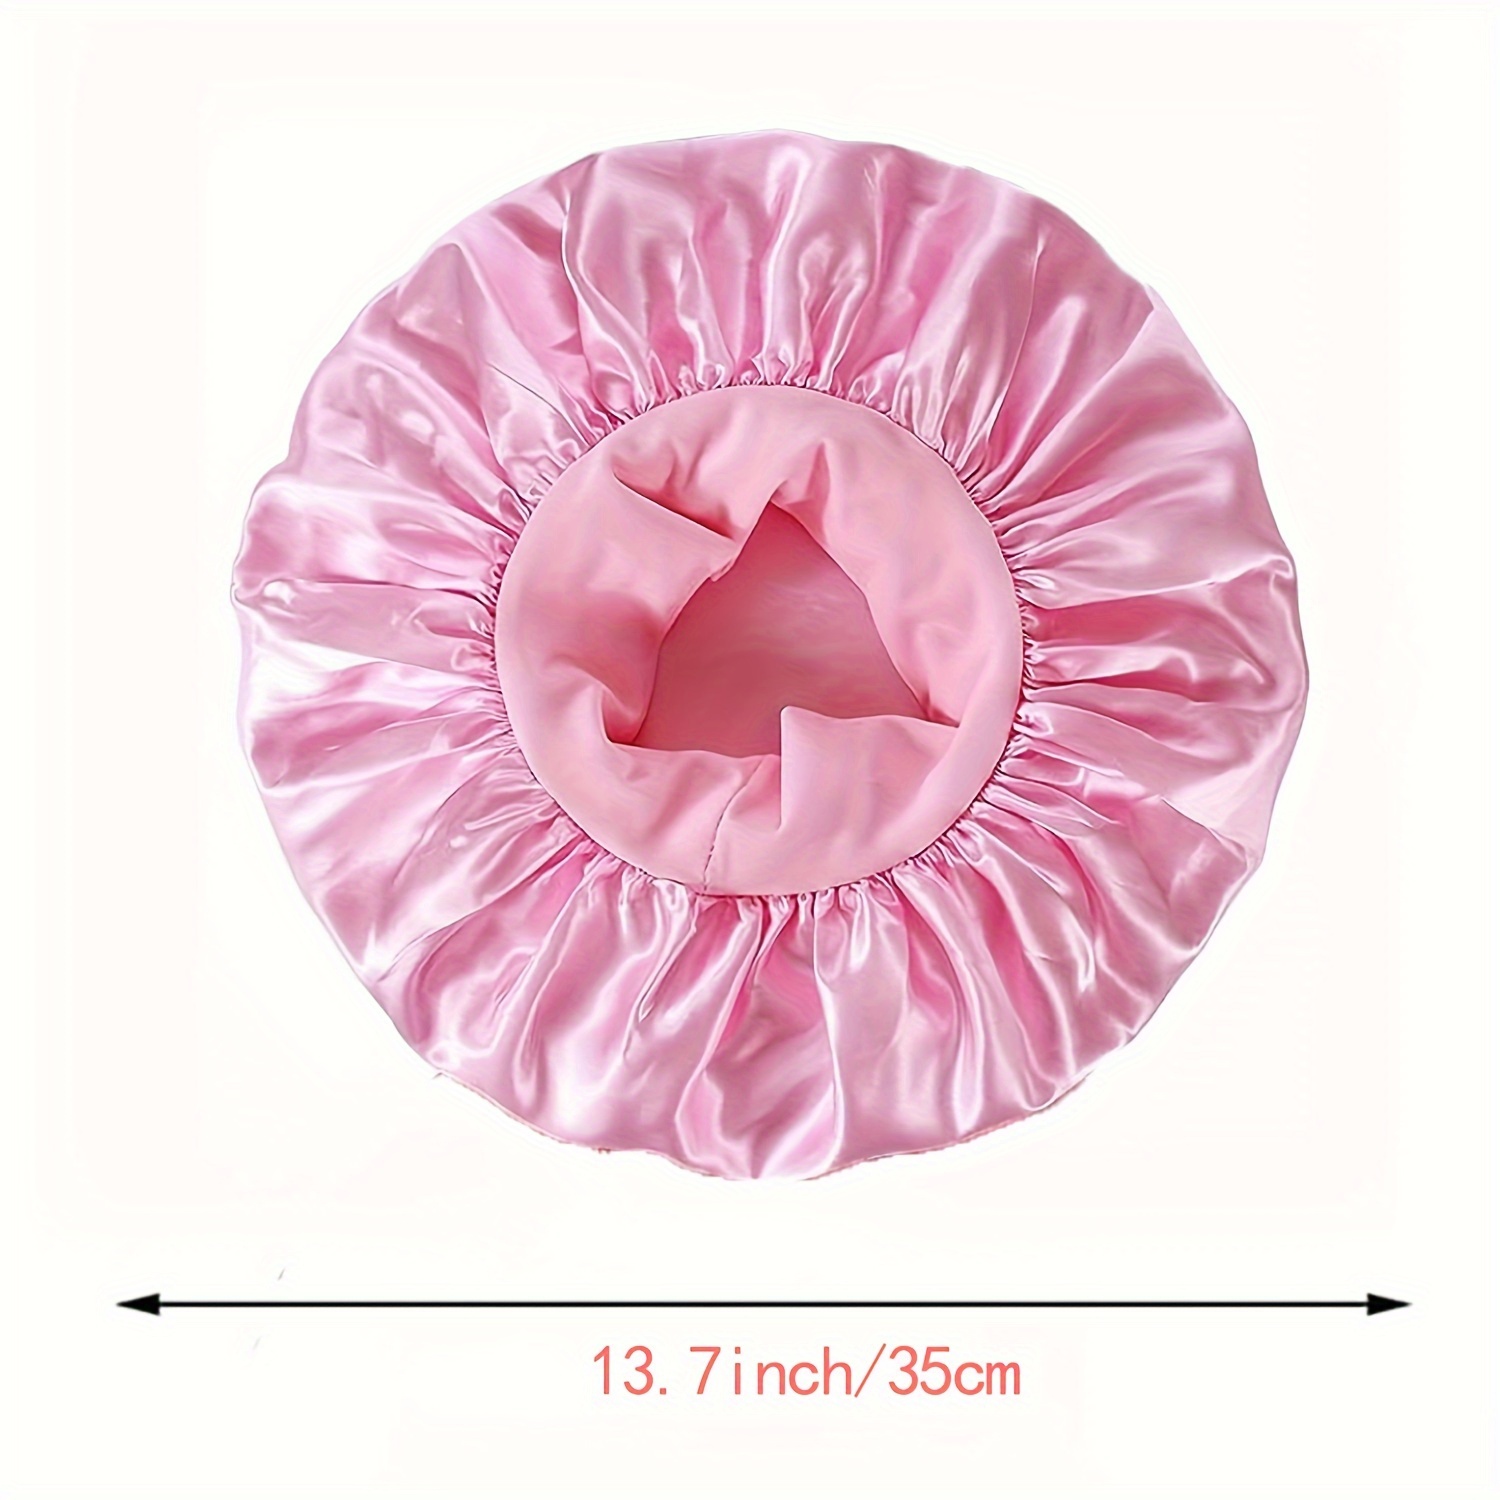 Gorro de satén de seda para dormir, con banda de amarre elástica, para  adultos, mujeres y niñas de cabello rizado, color rosado